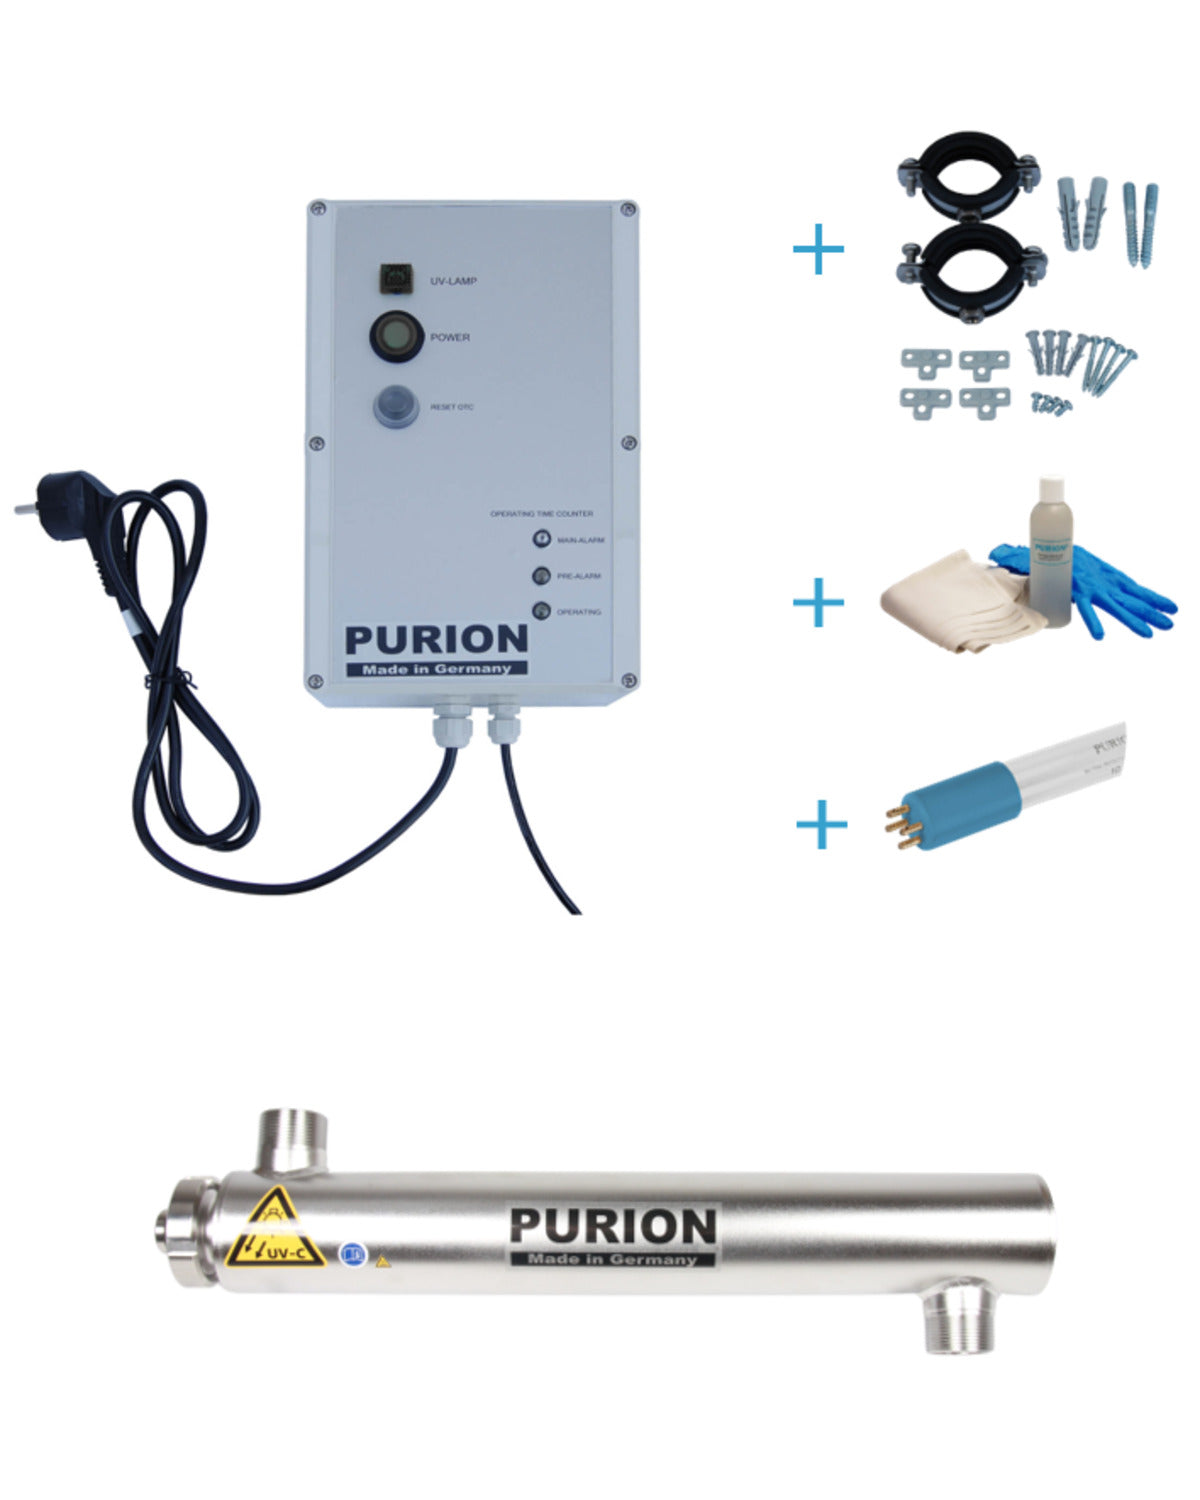 Das PURION 2001 OTC Bundle ist ein leistungsstarkes Gerät, das mittels UV-C-Desinfektion Algenbefall und andere Verunreinigungen effektiv beseitigt.